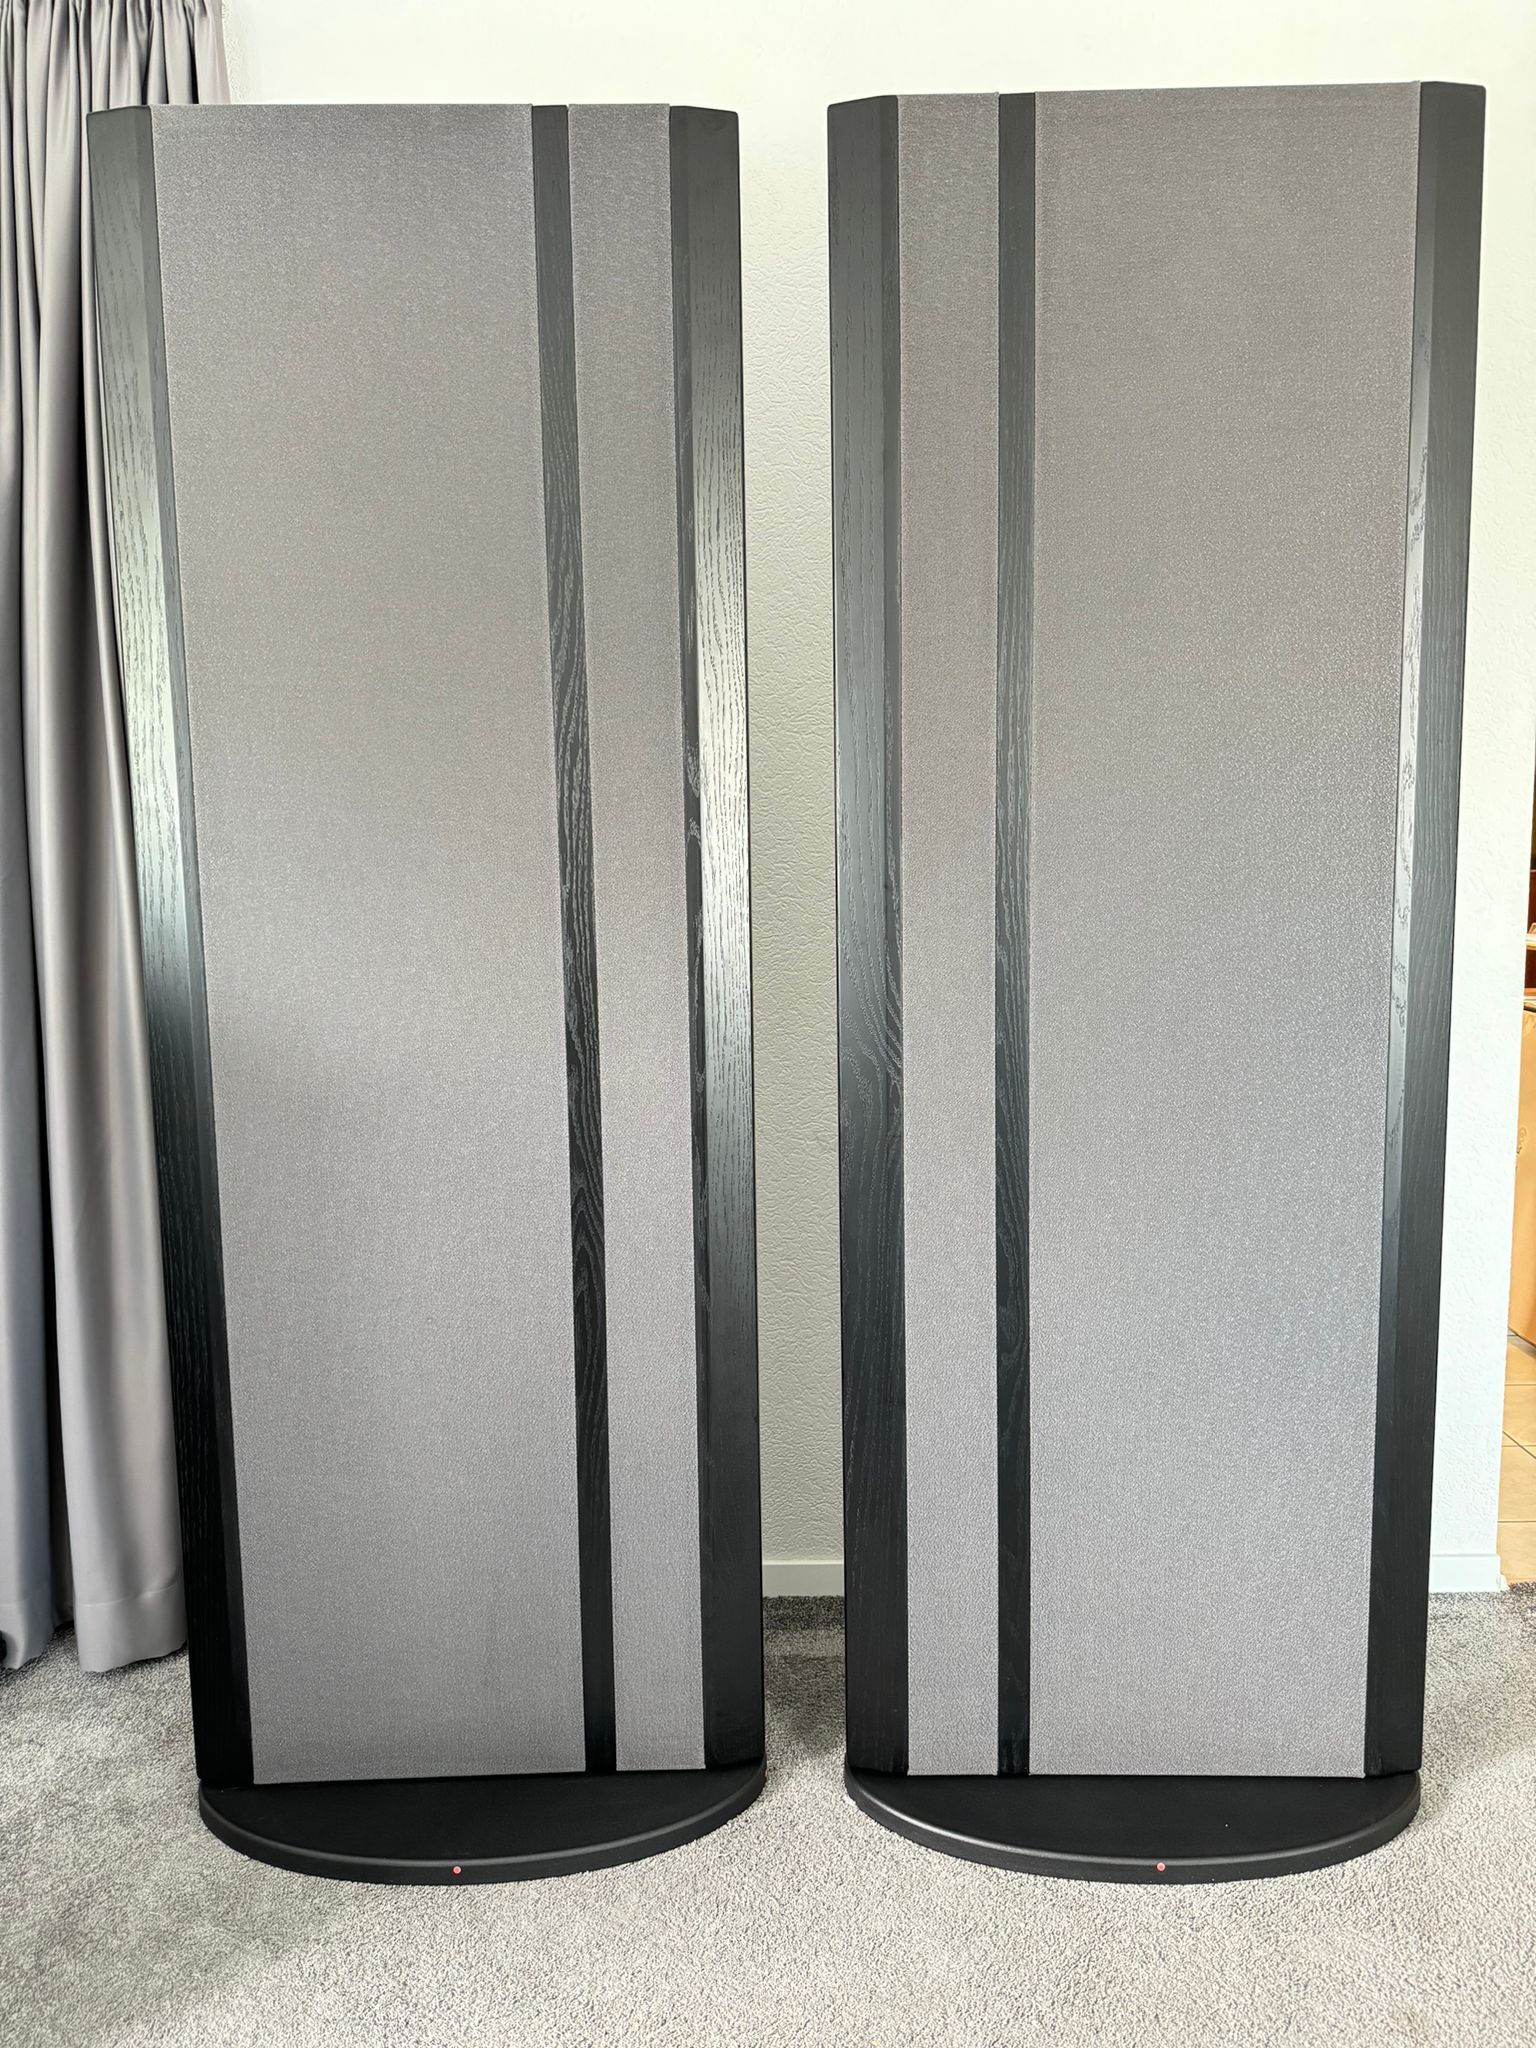 Magnepan 20.7 speakers in black-grey